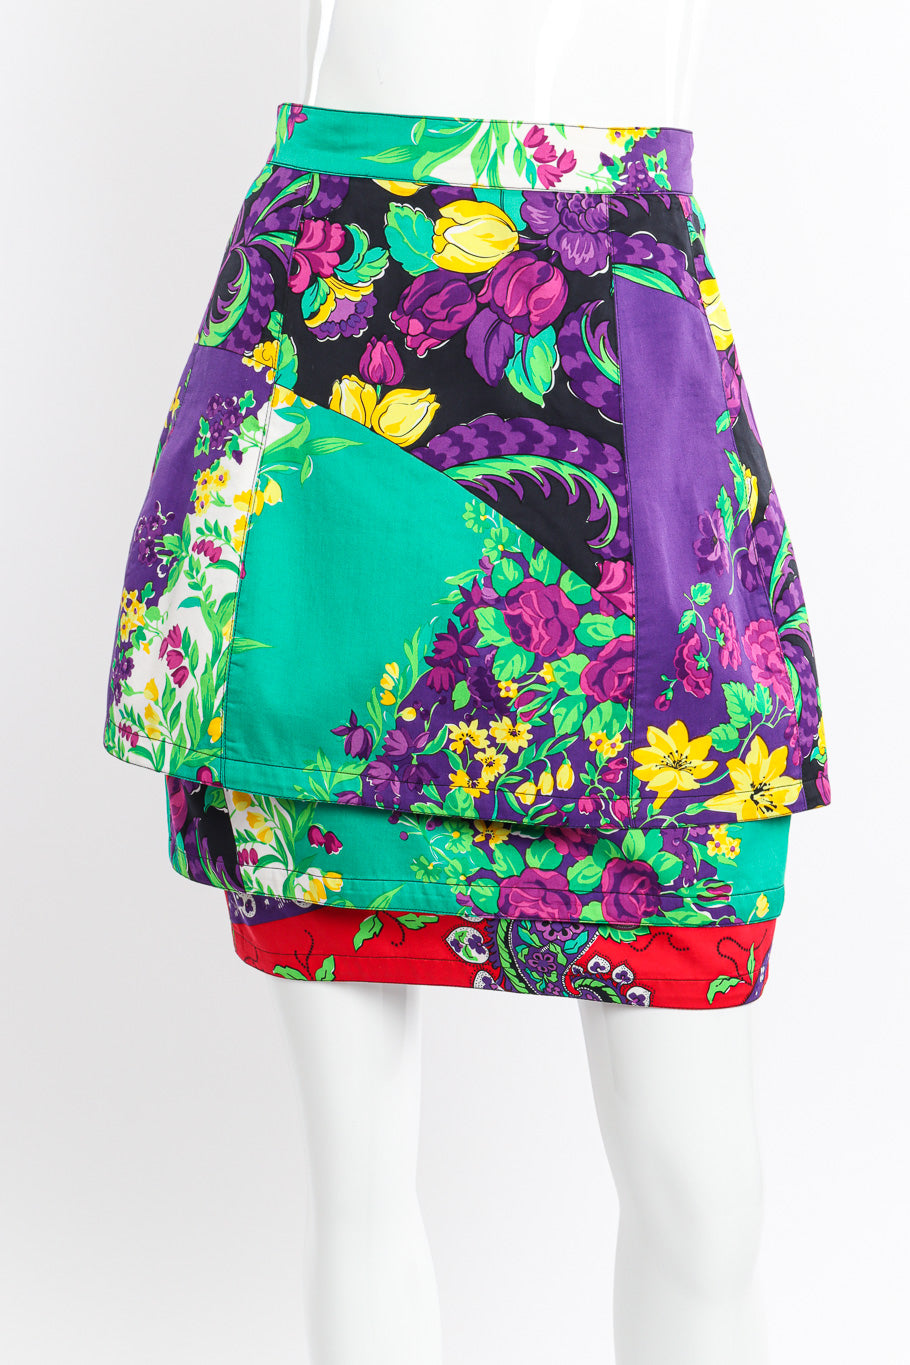 Vintage Gianni Versace Floral Cotton Tier Skirt front view on mannequin closeup @Recessla